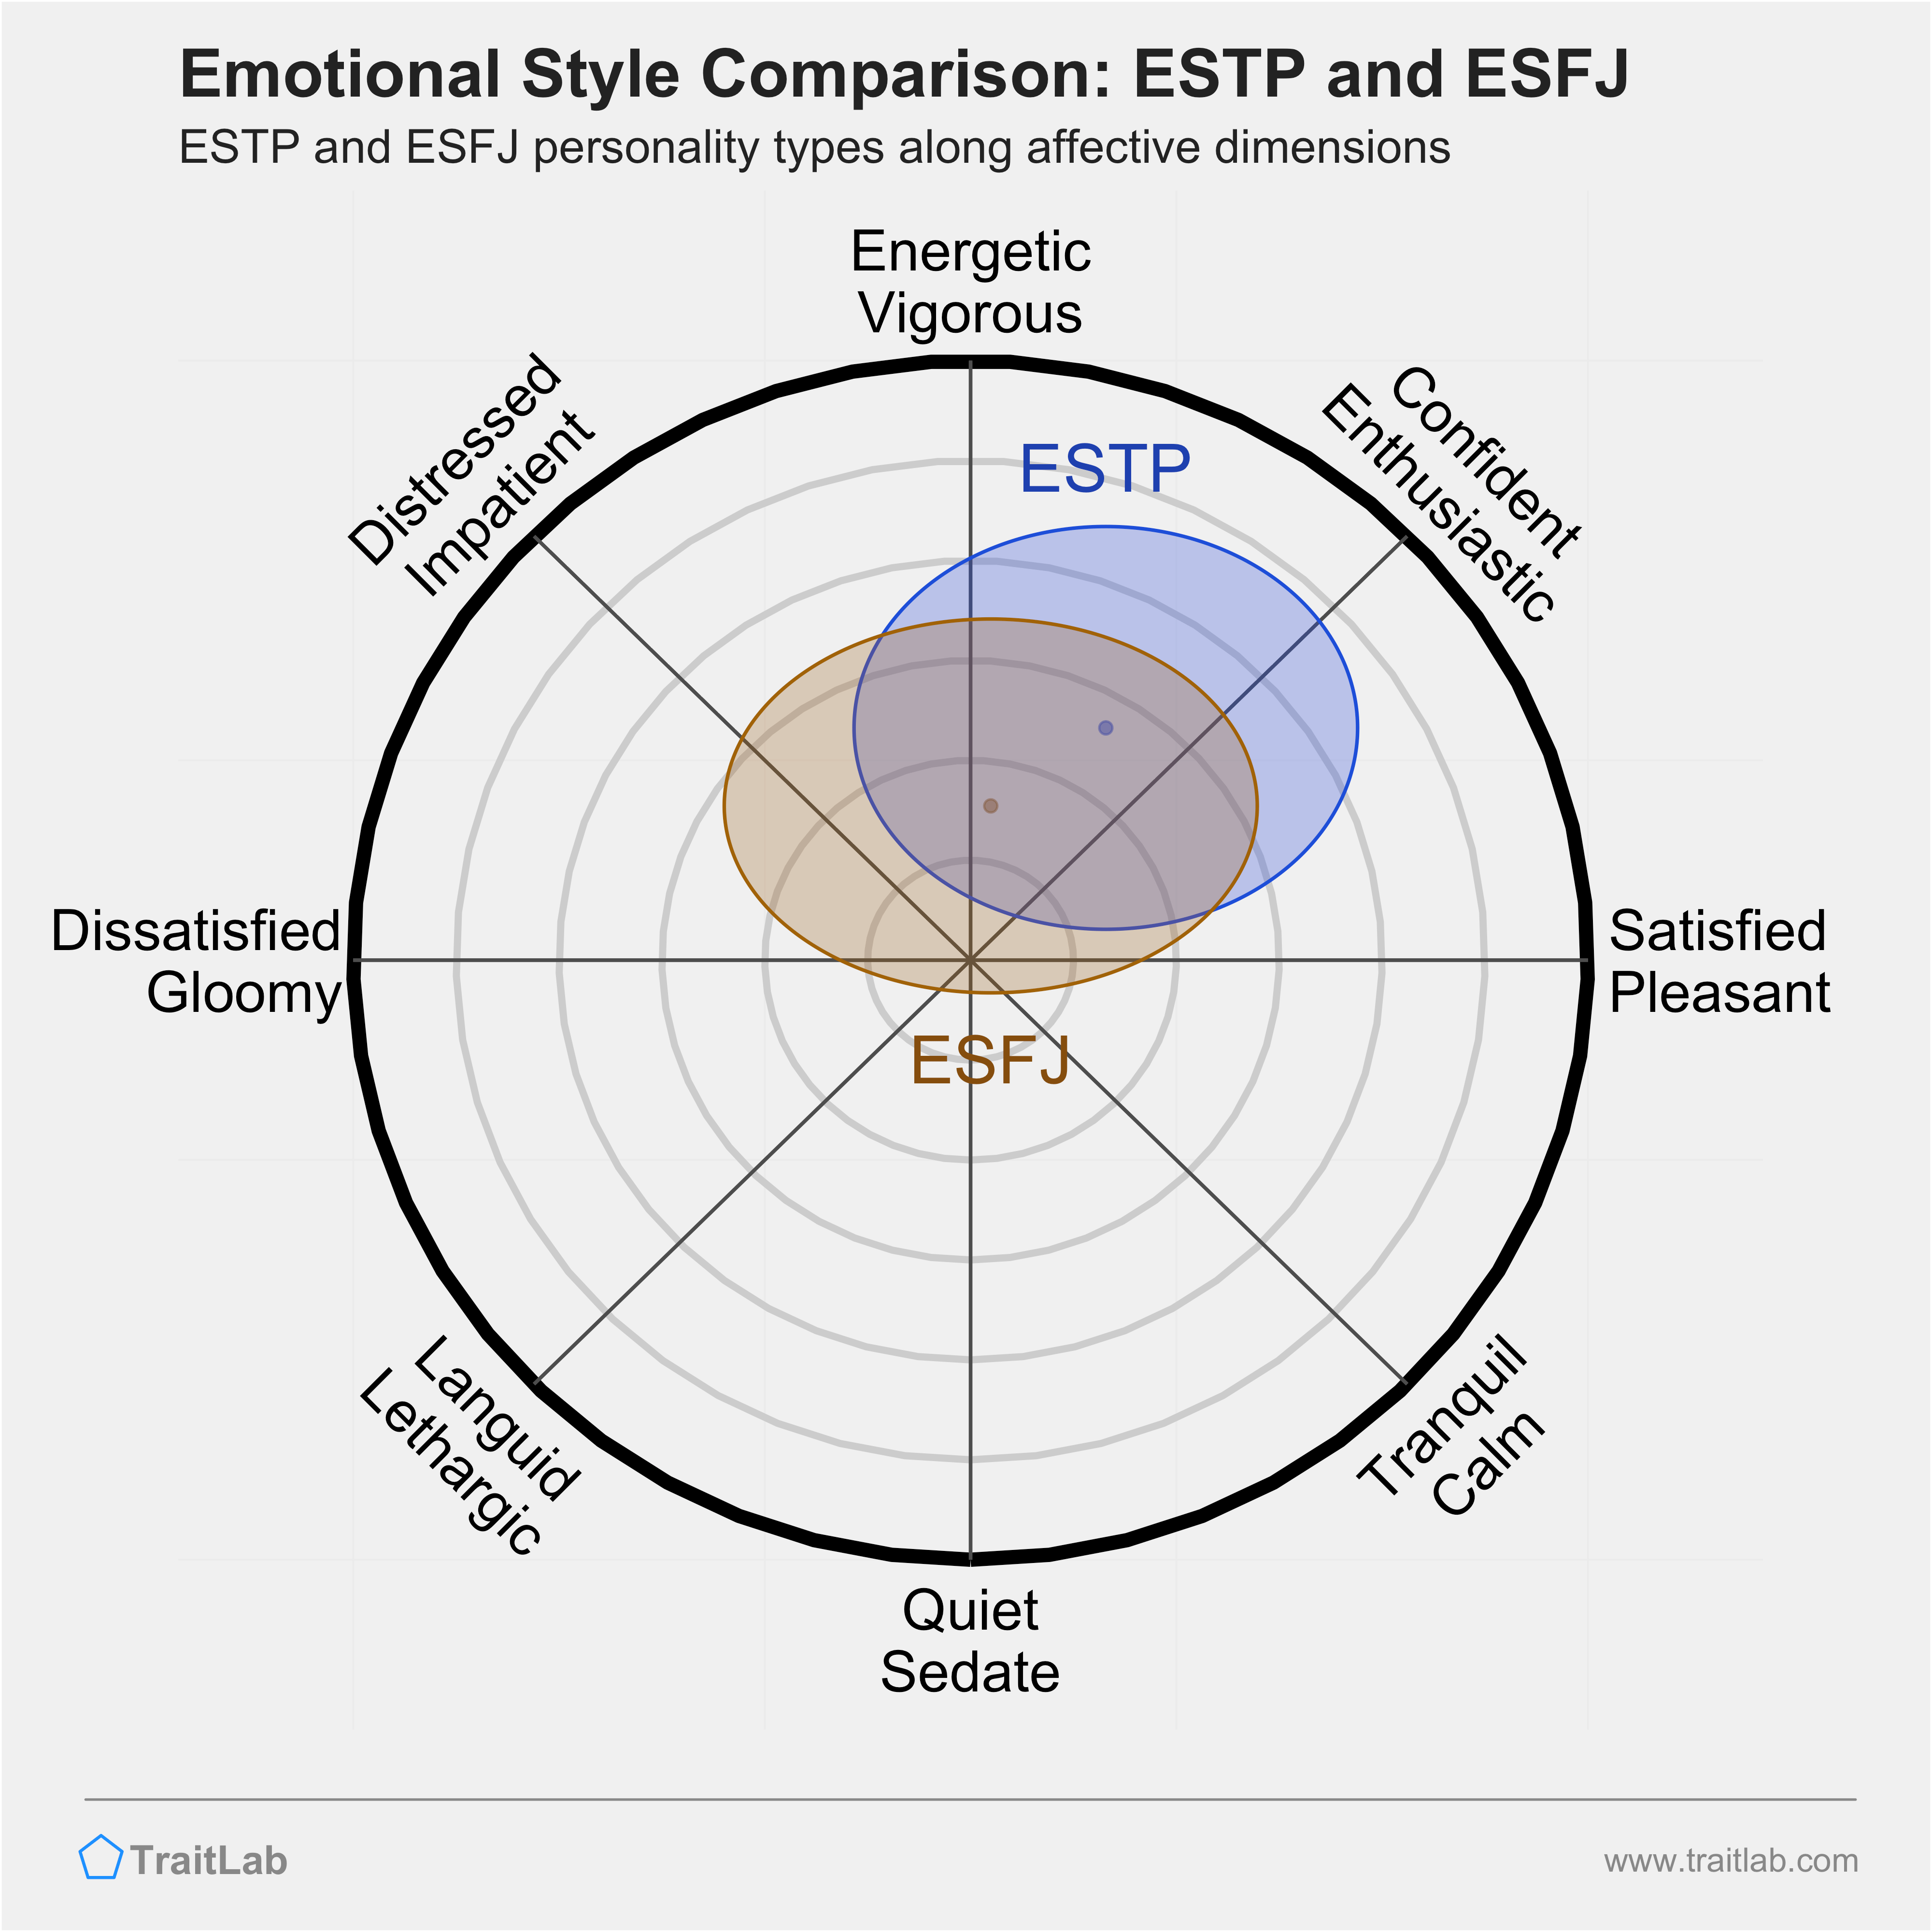 ESTP and ESFJ comparison across emotional (affective) dimensions